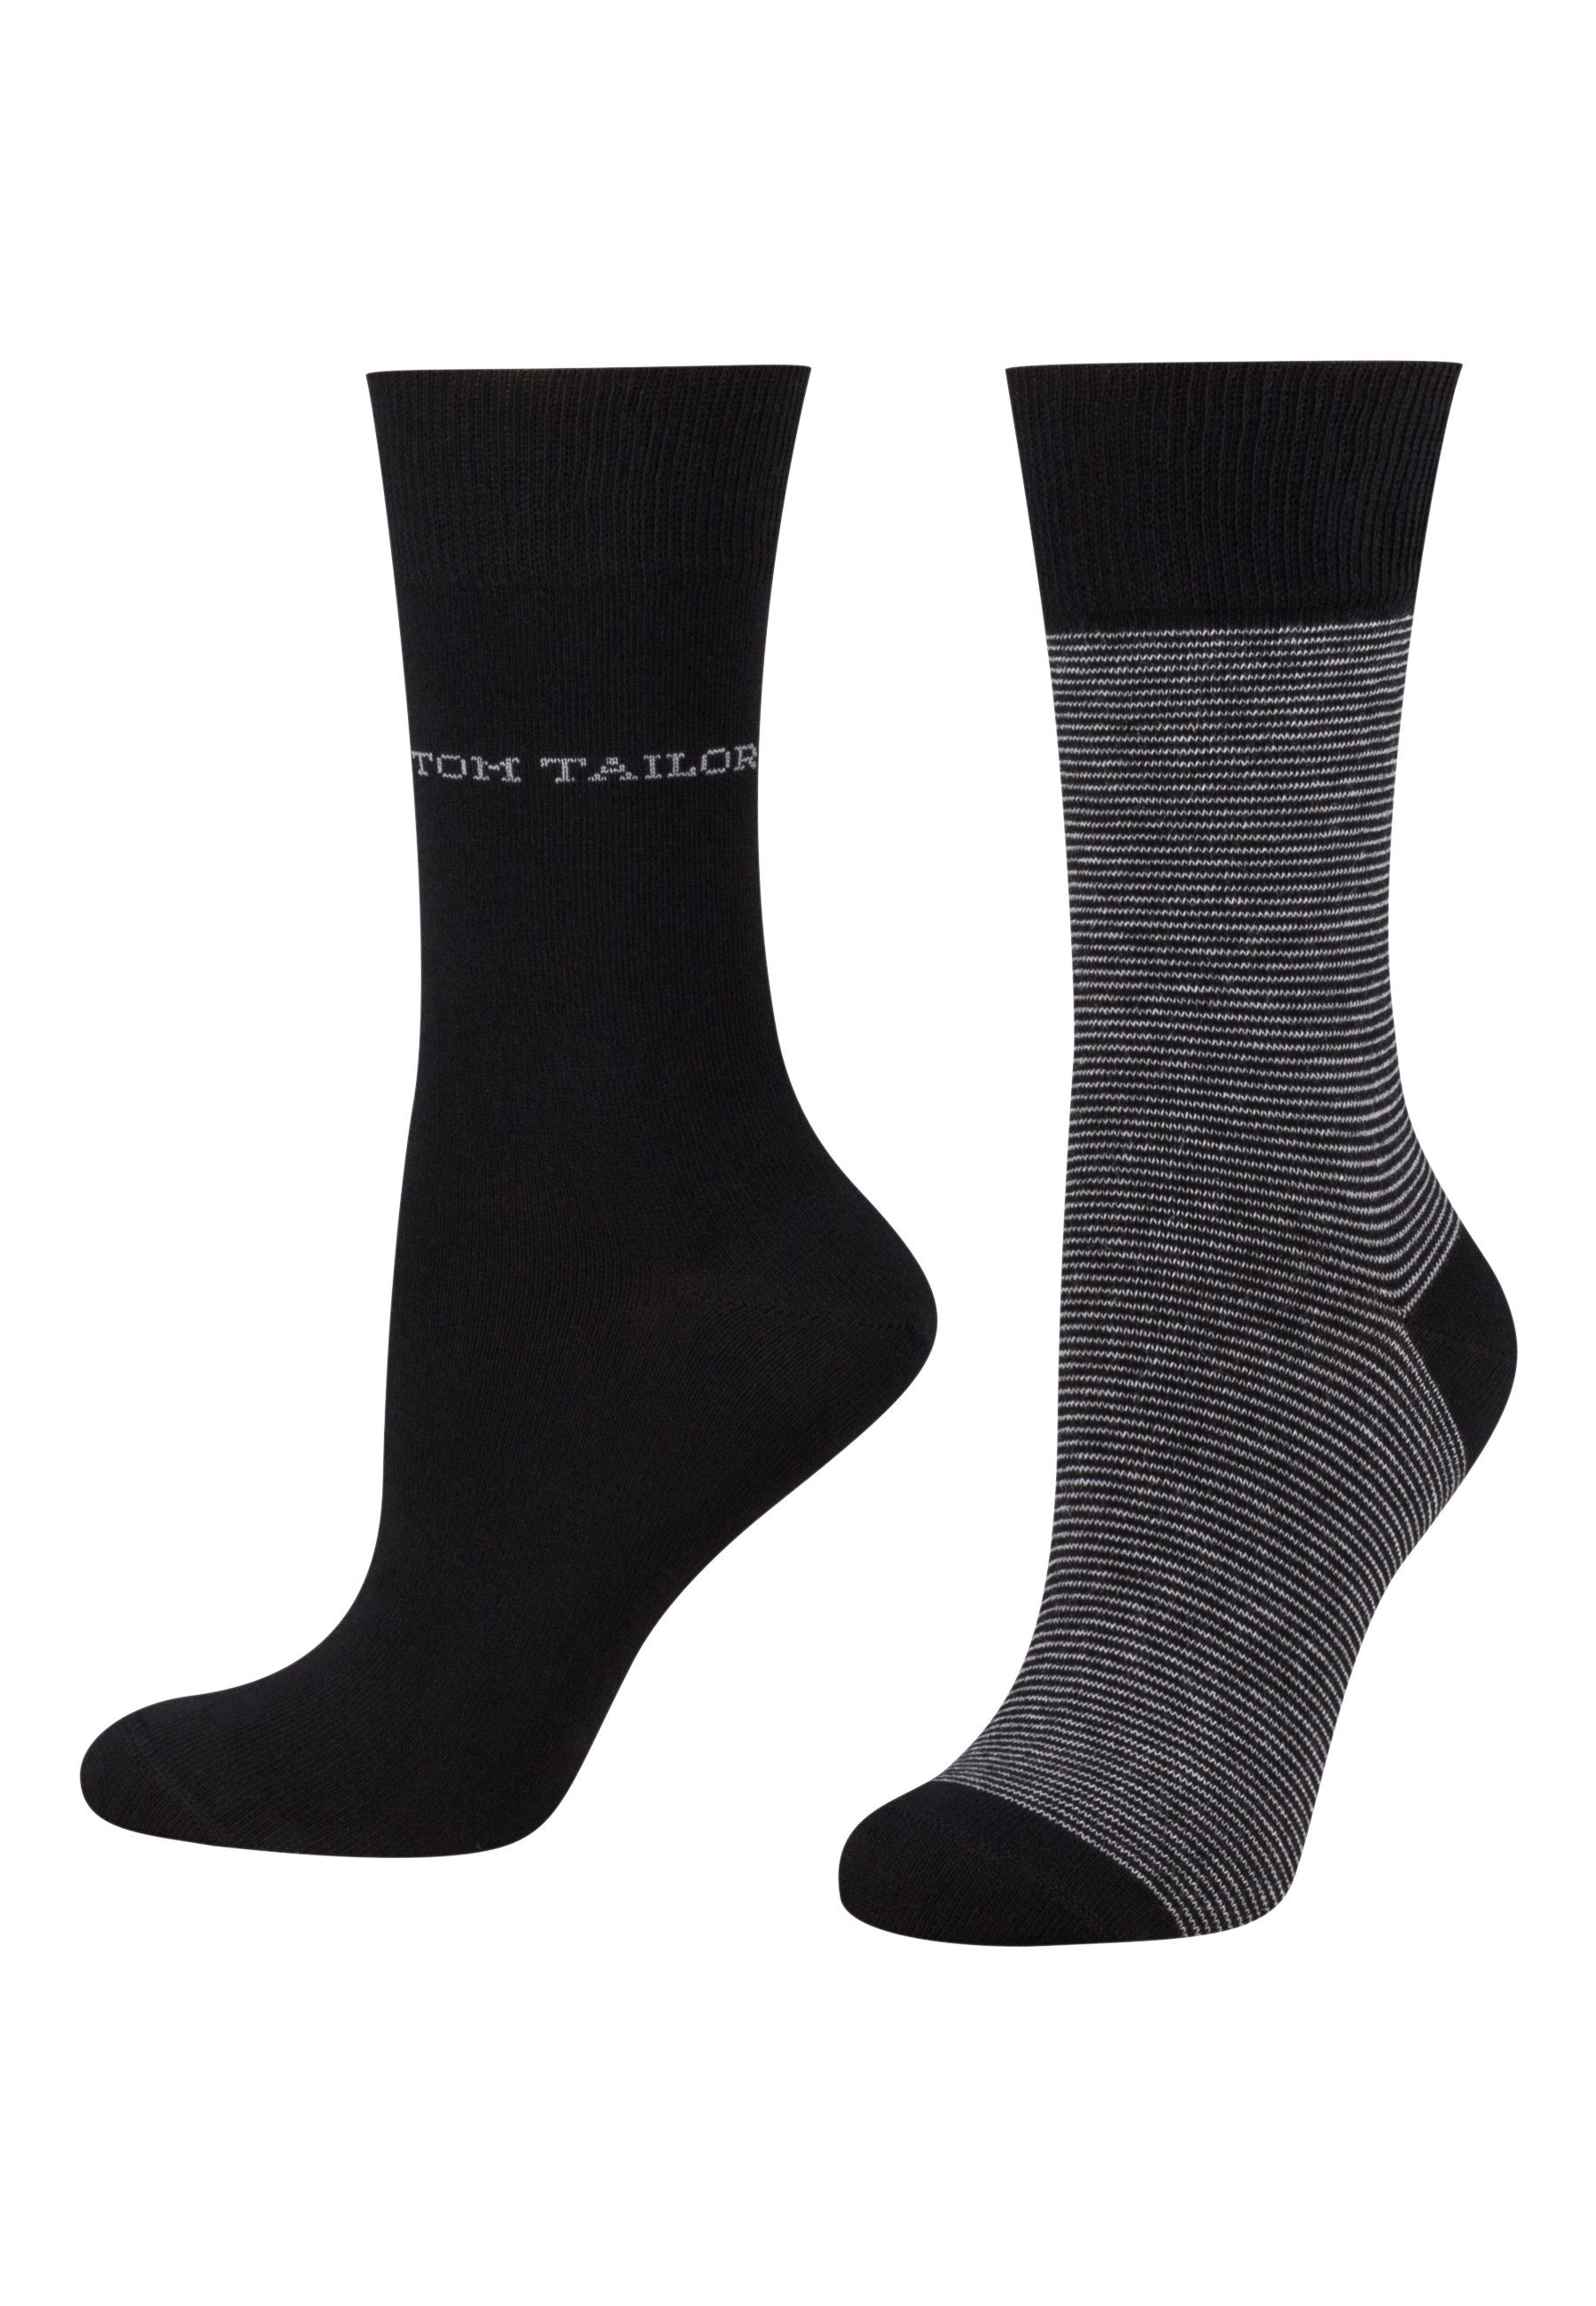 TOM TAILOR Sportsocken 9521610038 Tom Tailor women socks 2er basic stripe